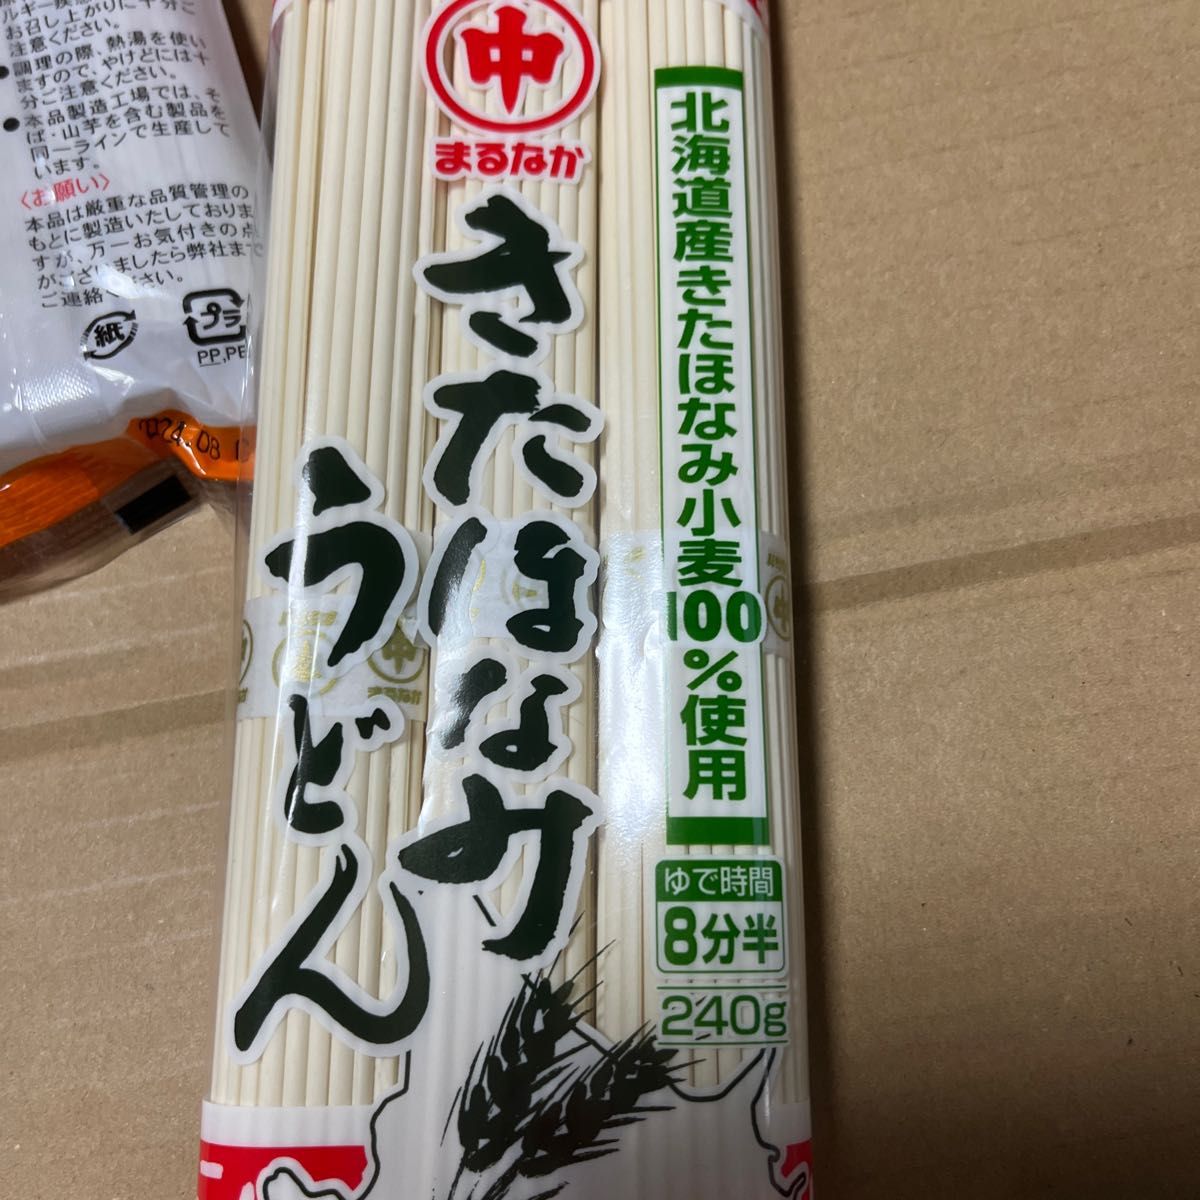 送料無料新品 8袋 北海道ブランドきたほなみ小麦 そうめん ソーメン素麺 乾麺